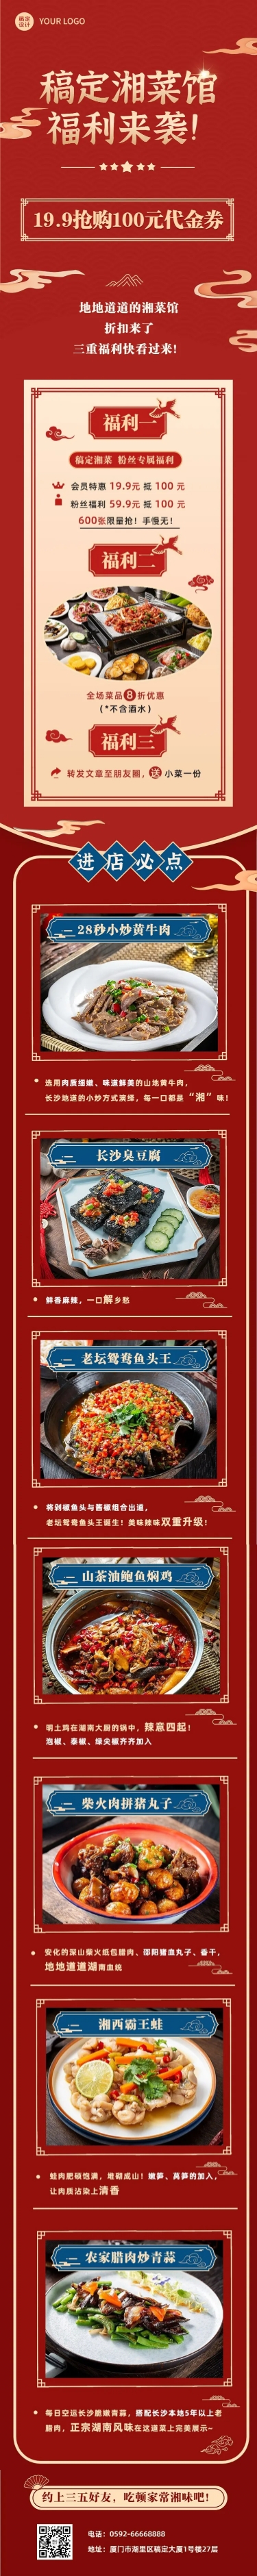 餐饮美食湘菜促销中国风文章长图预览效果